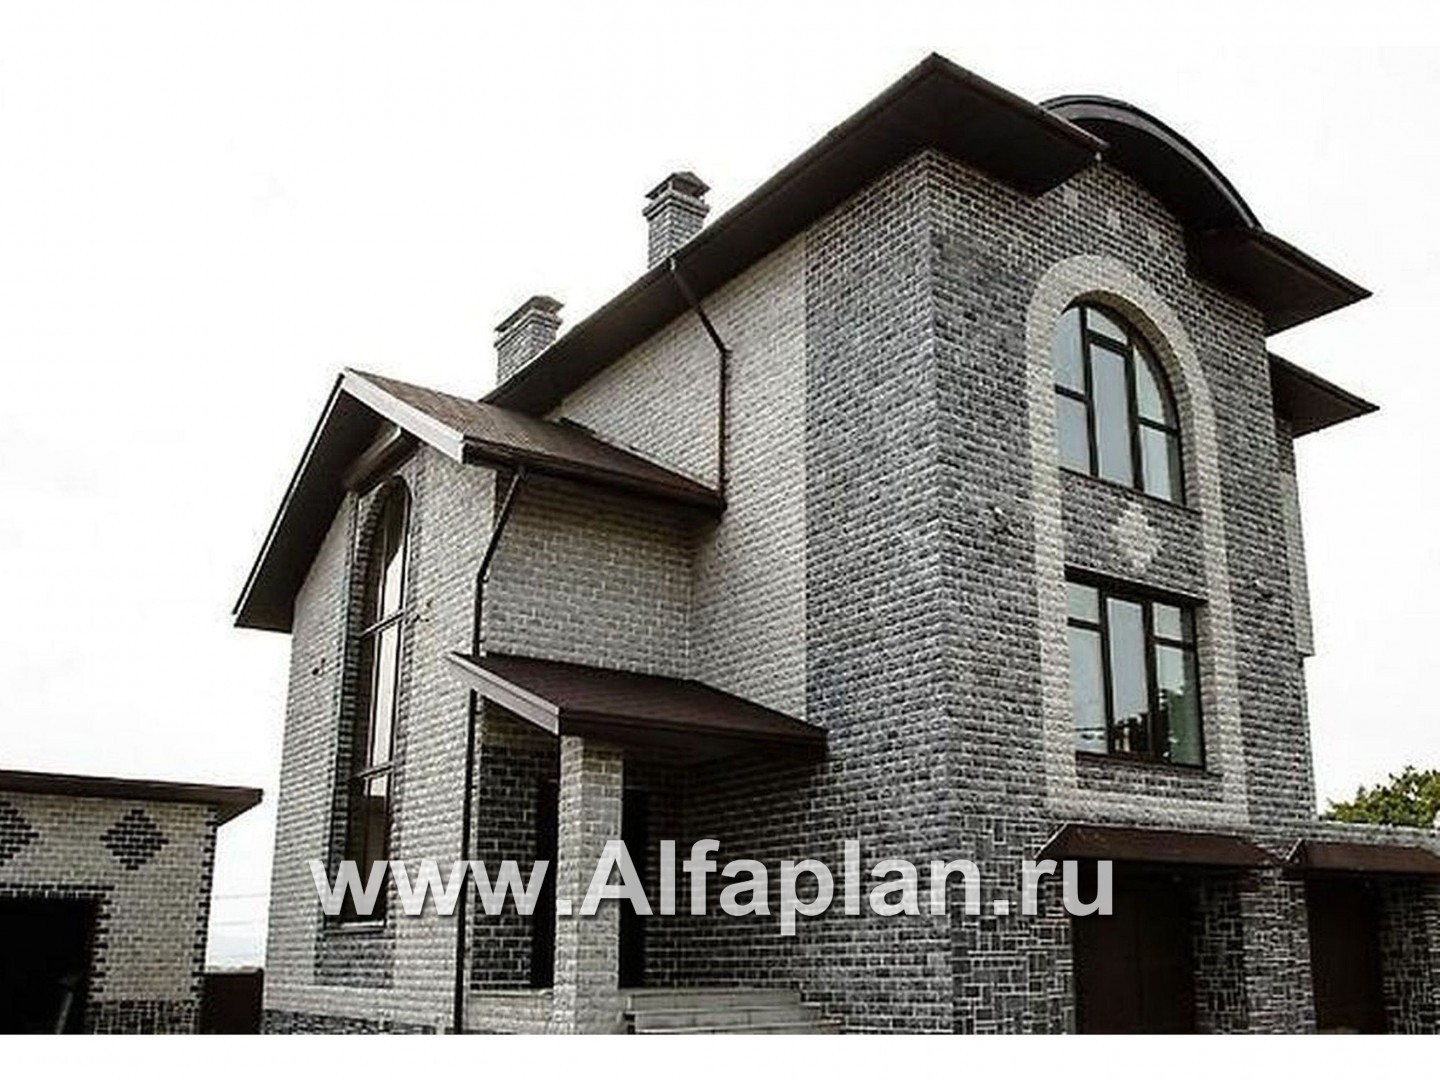 Проекты домов Альфаплан - «Юсупов» - особняк с просторной гостиной - дополнительное изображение №3